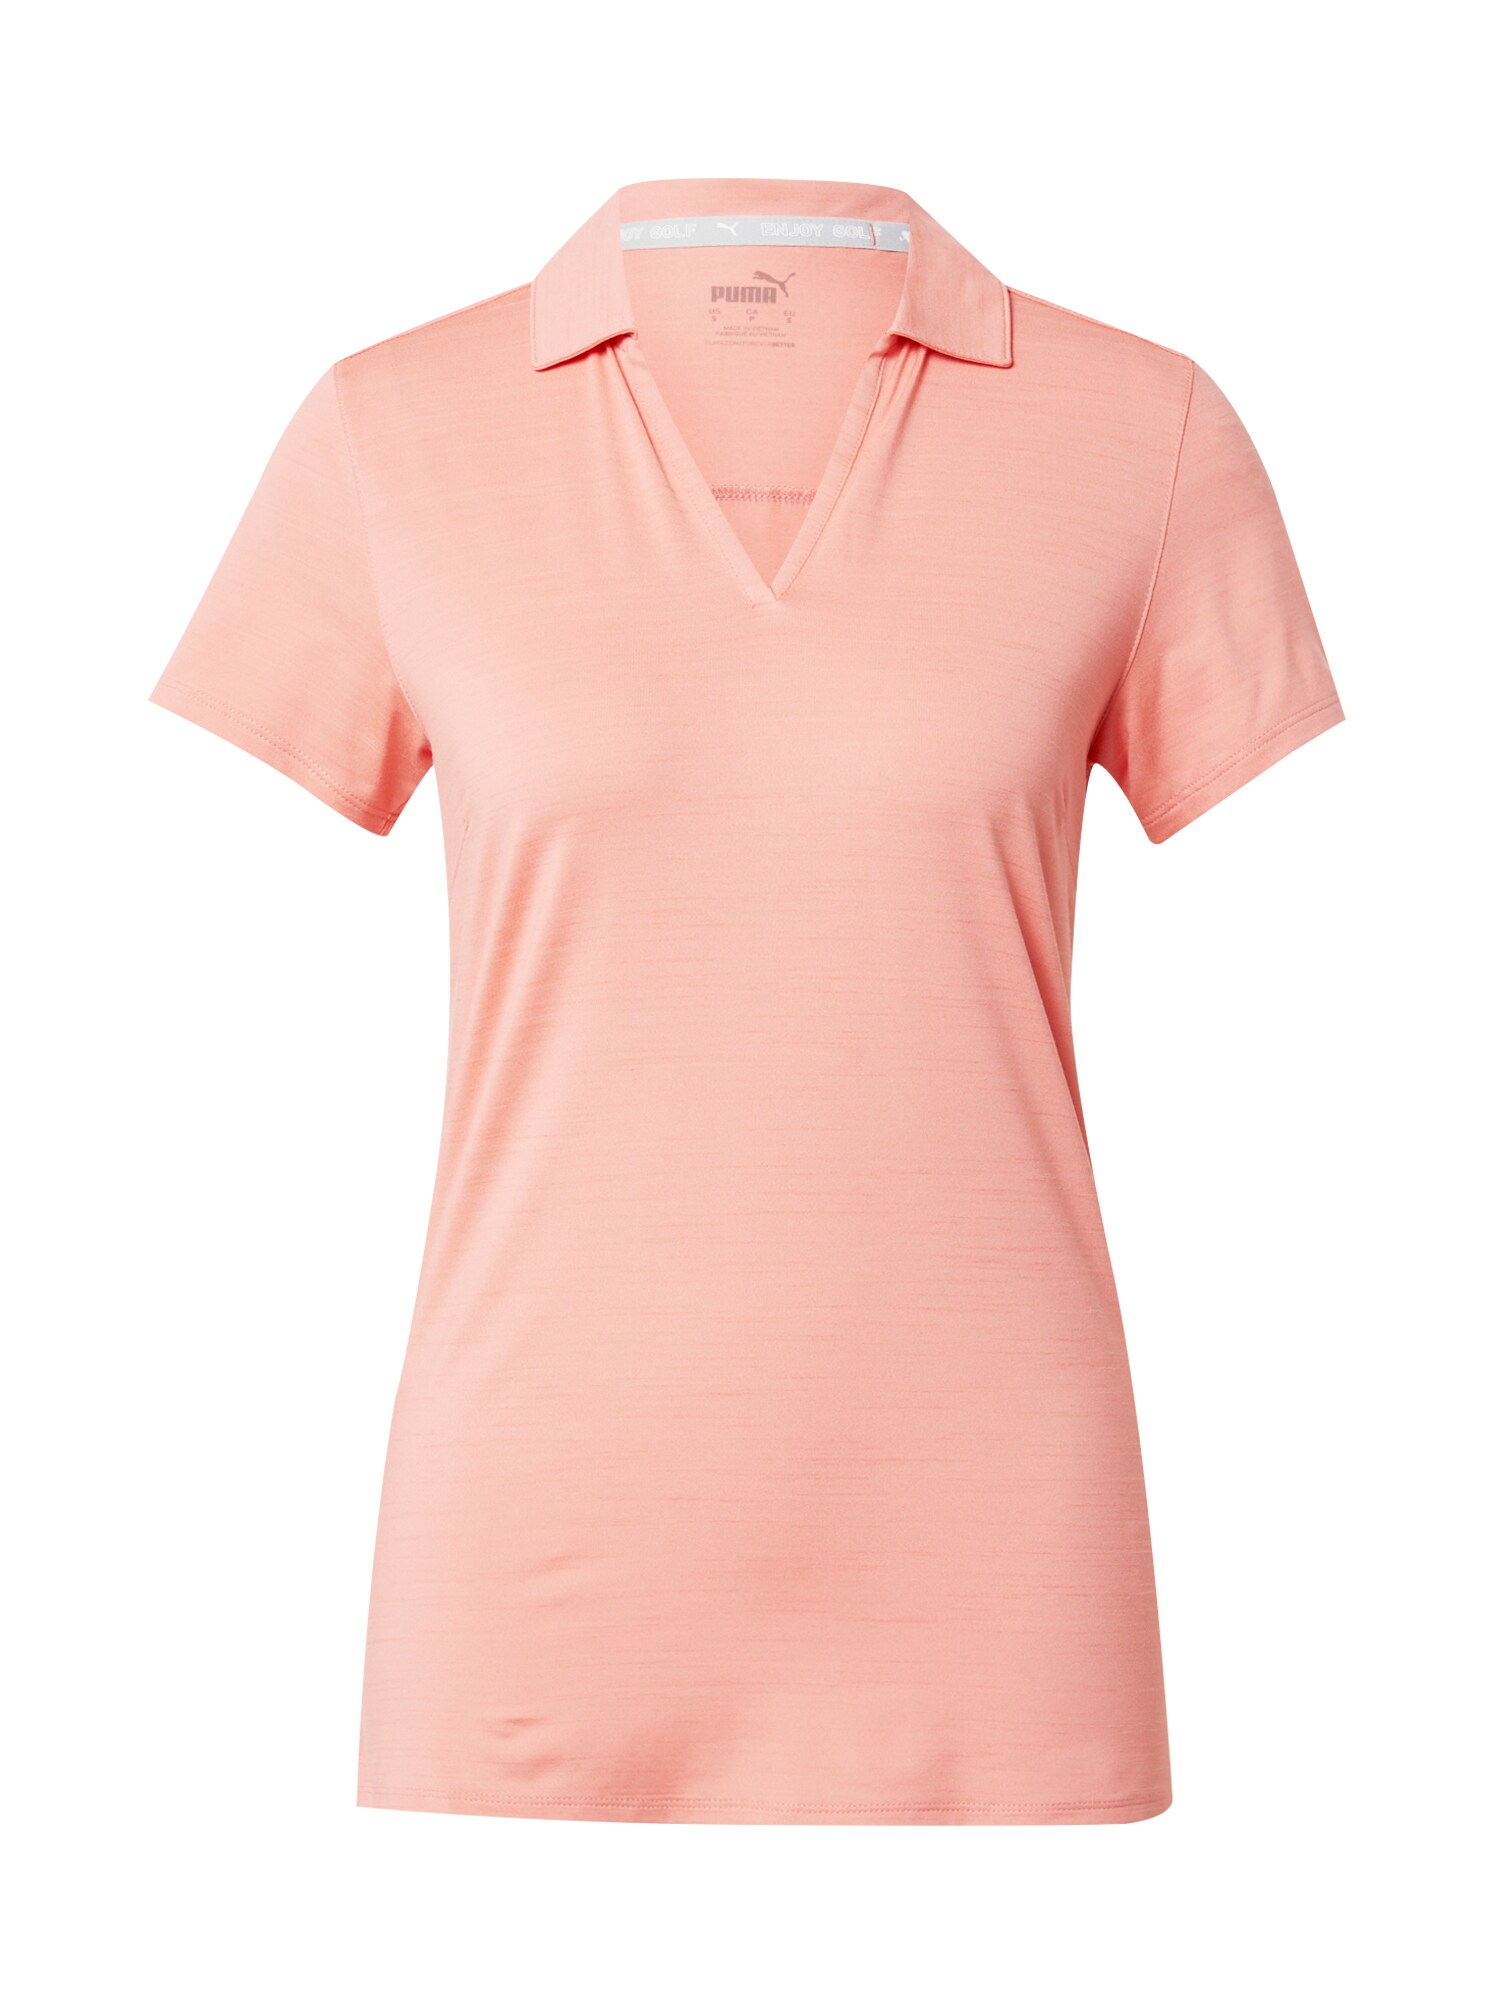 PUMA Sportiniai marškinėliai ryškiai rožinė spalva